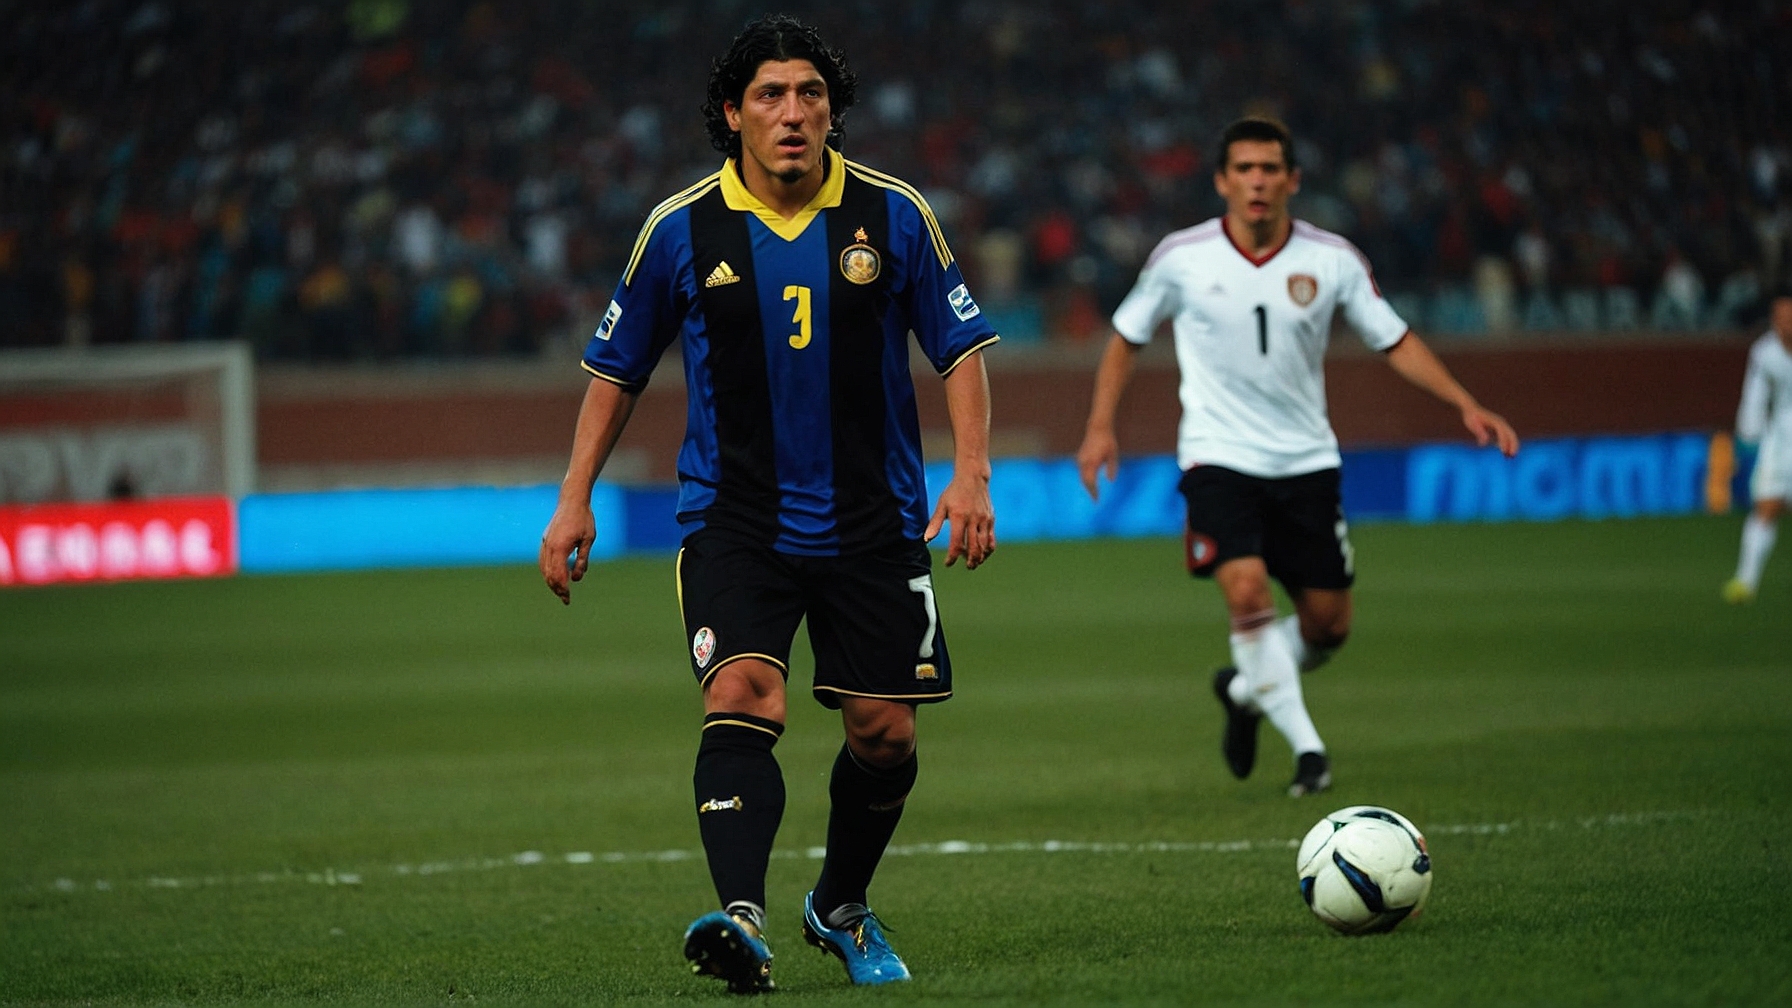 Iván Zamorano: La leyenda del fútbol chileno que inspira a nuestros alumnos